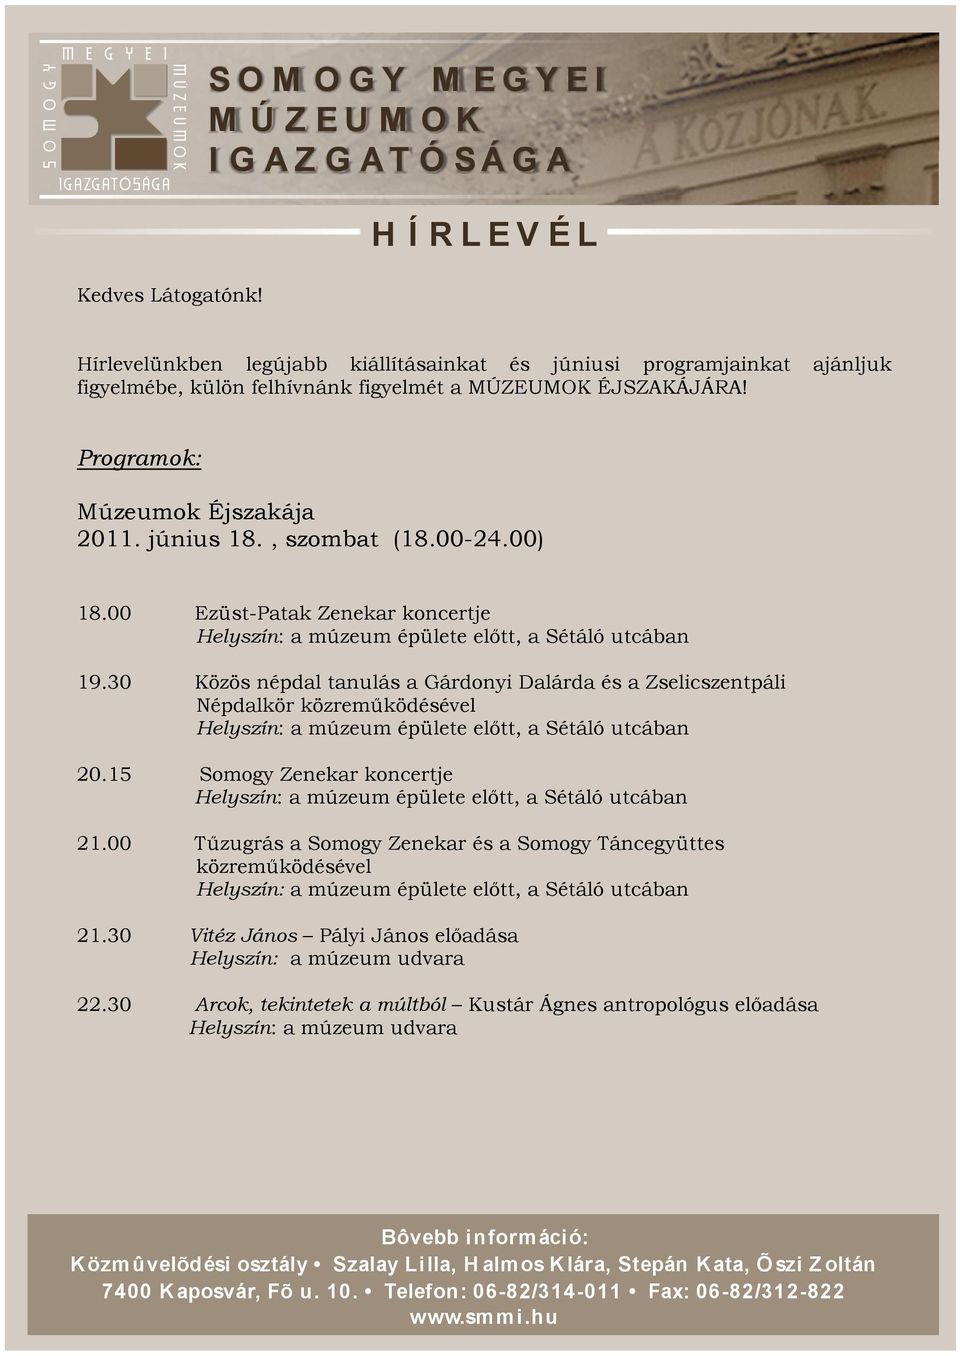 Programok: Múzeumok Éjszakája 2011. június 18., szombat (18.00-24.00) 18.00 Ezüst-Patak Zenekar koncertje 19.